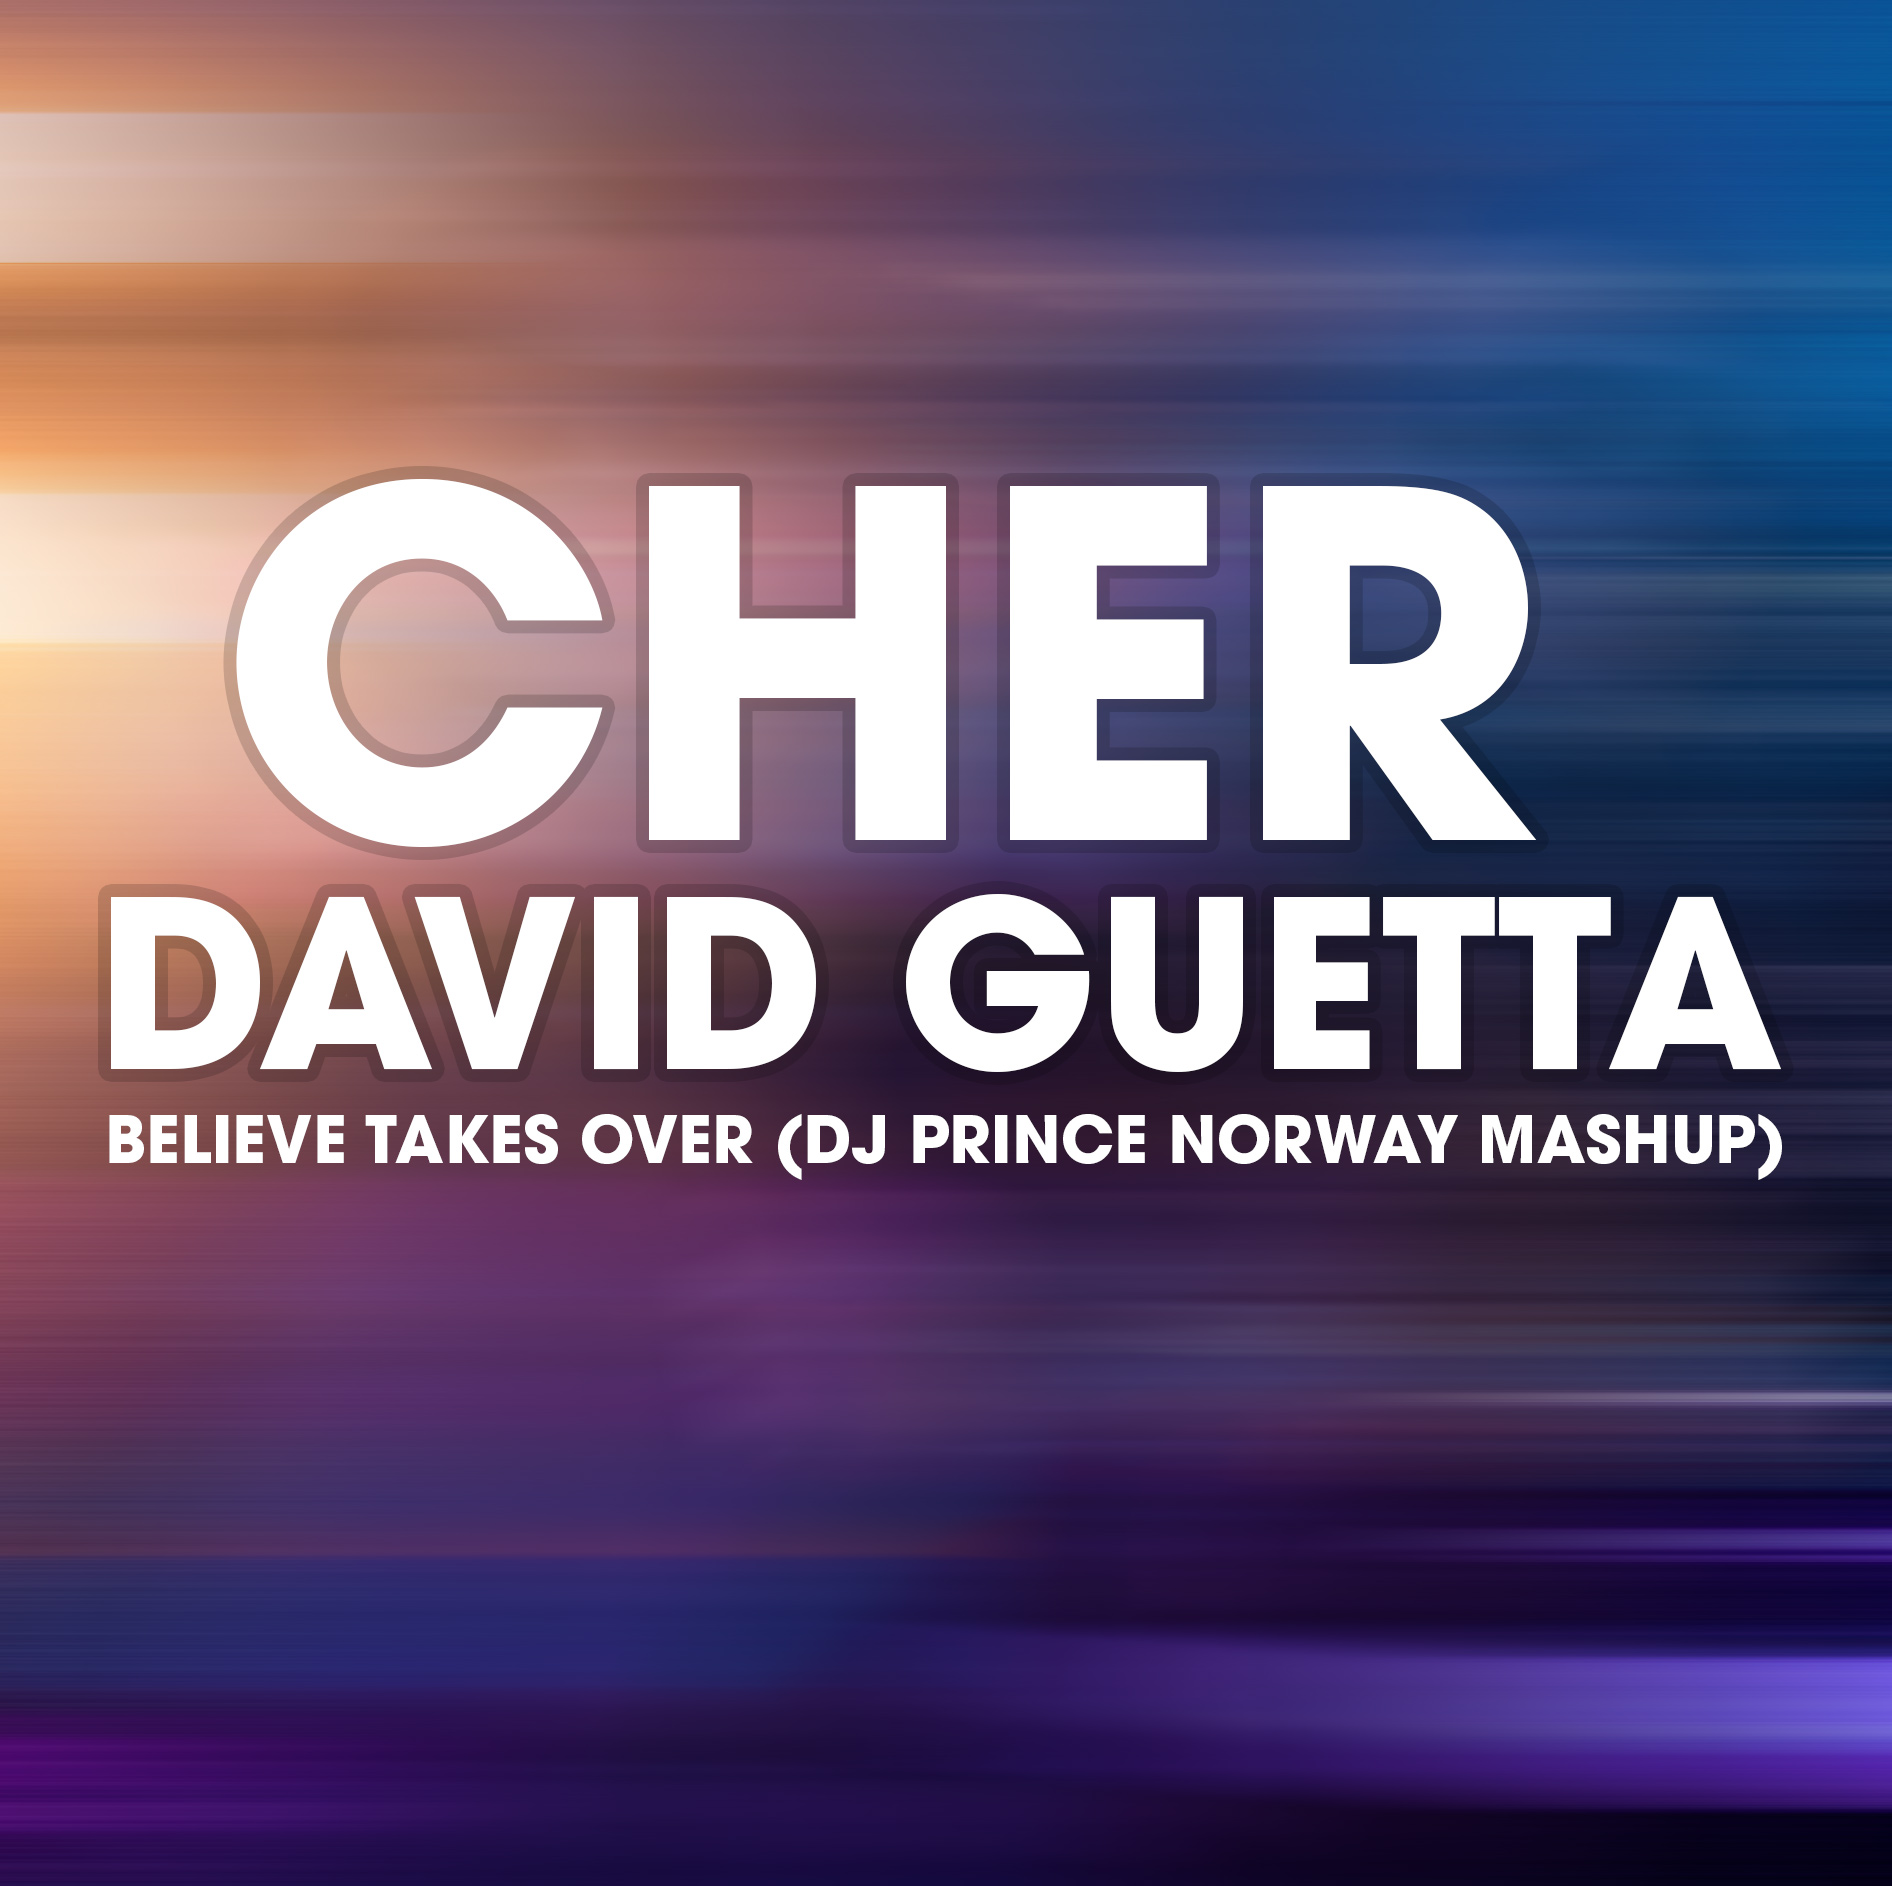 Cher vs David Guetta vs MEM - Believe takes over (DJ Prince Norway mashup